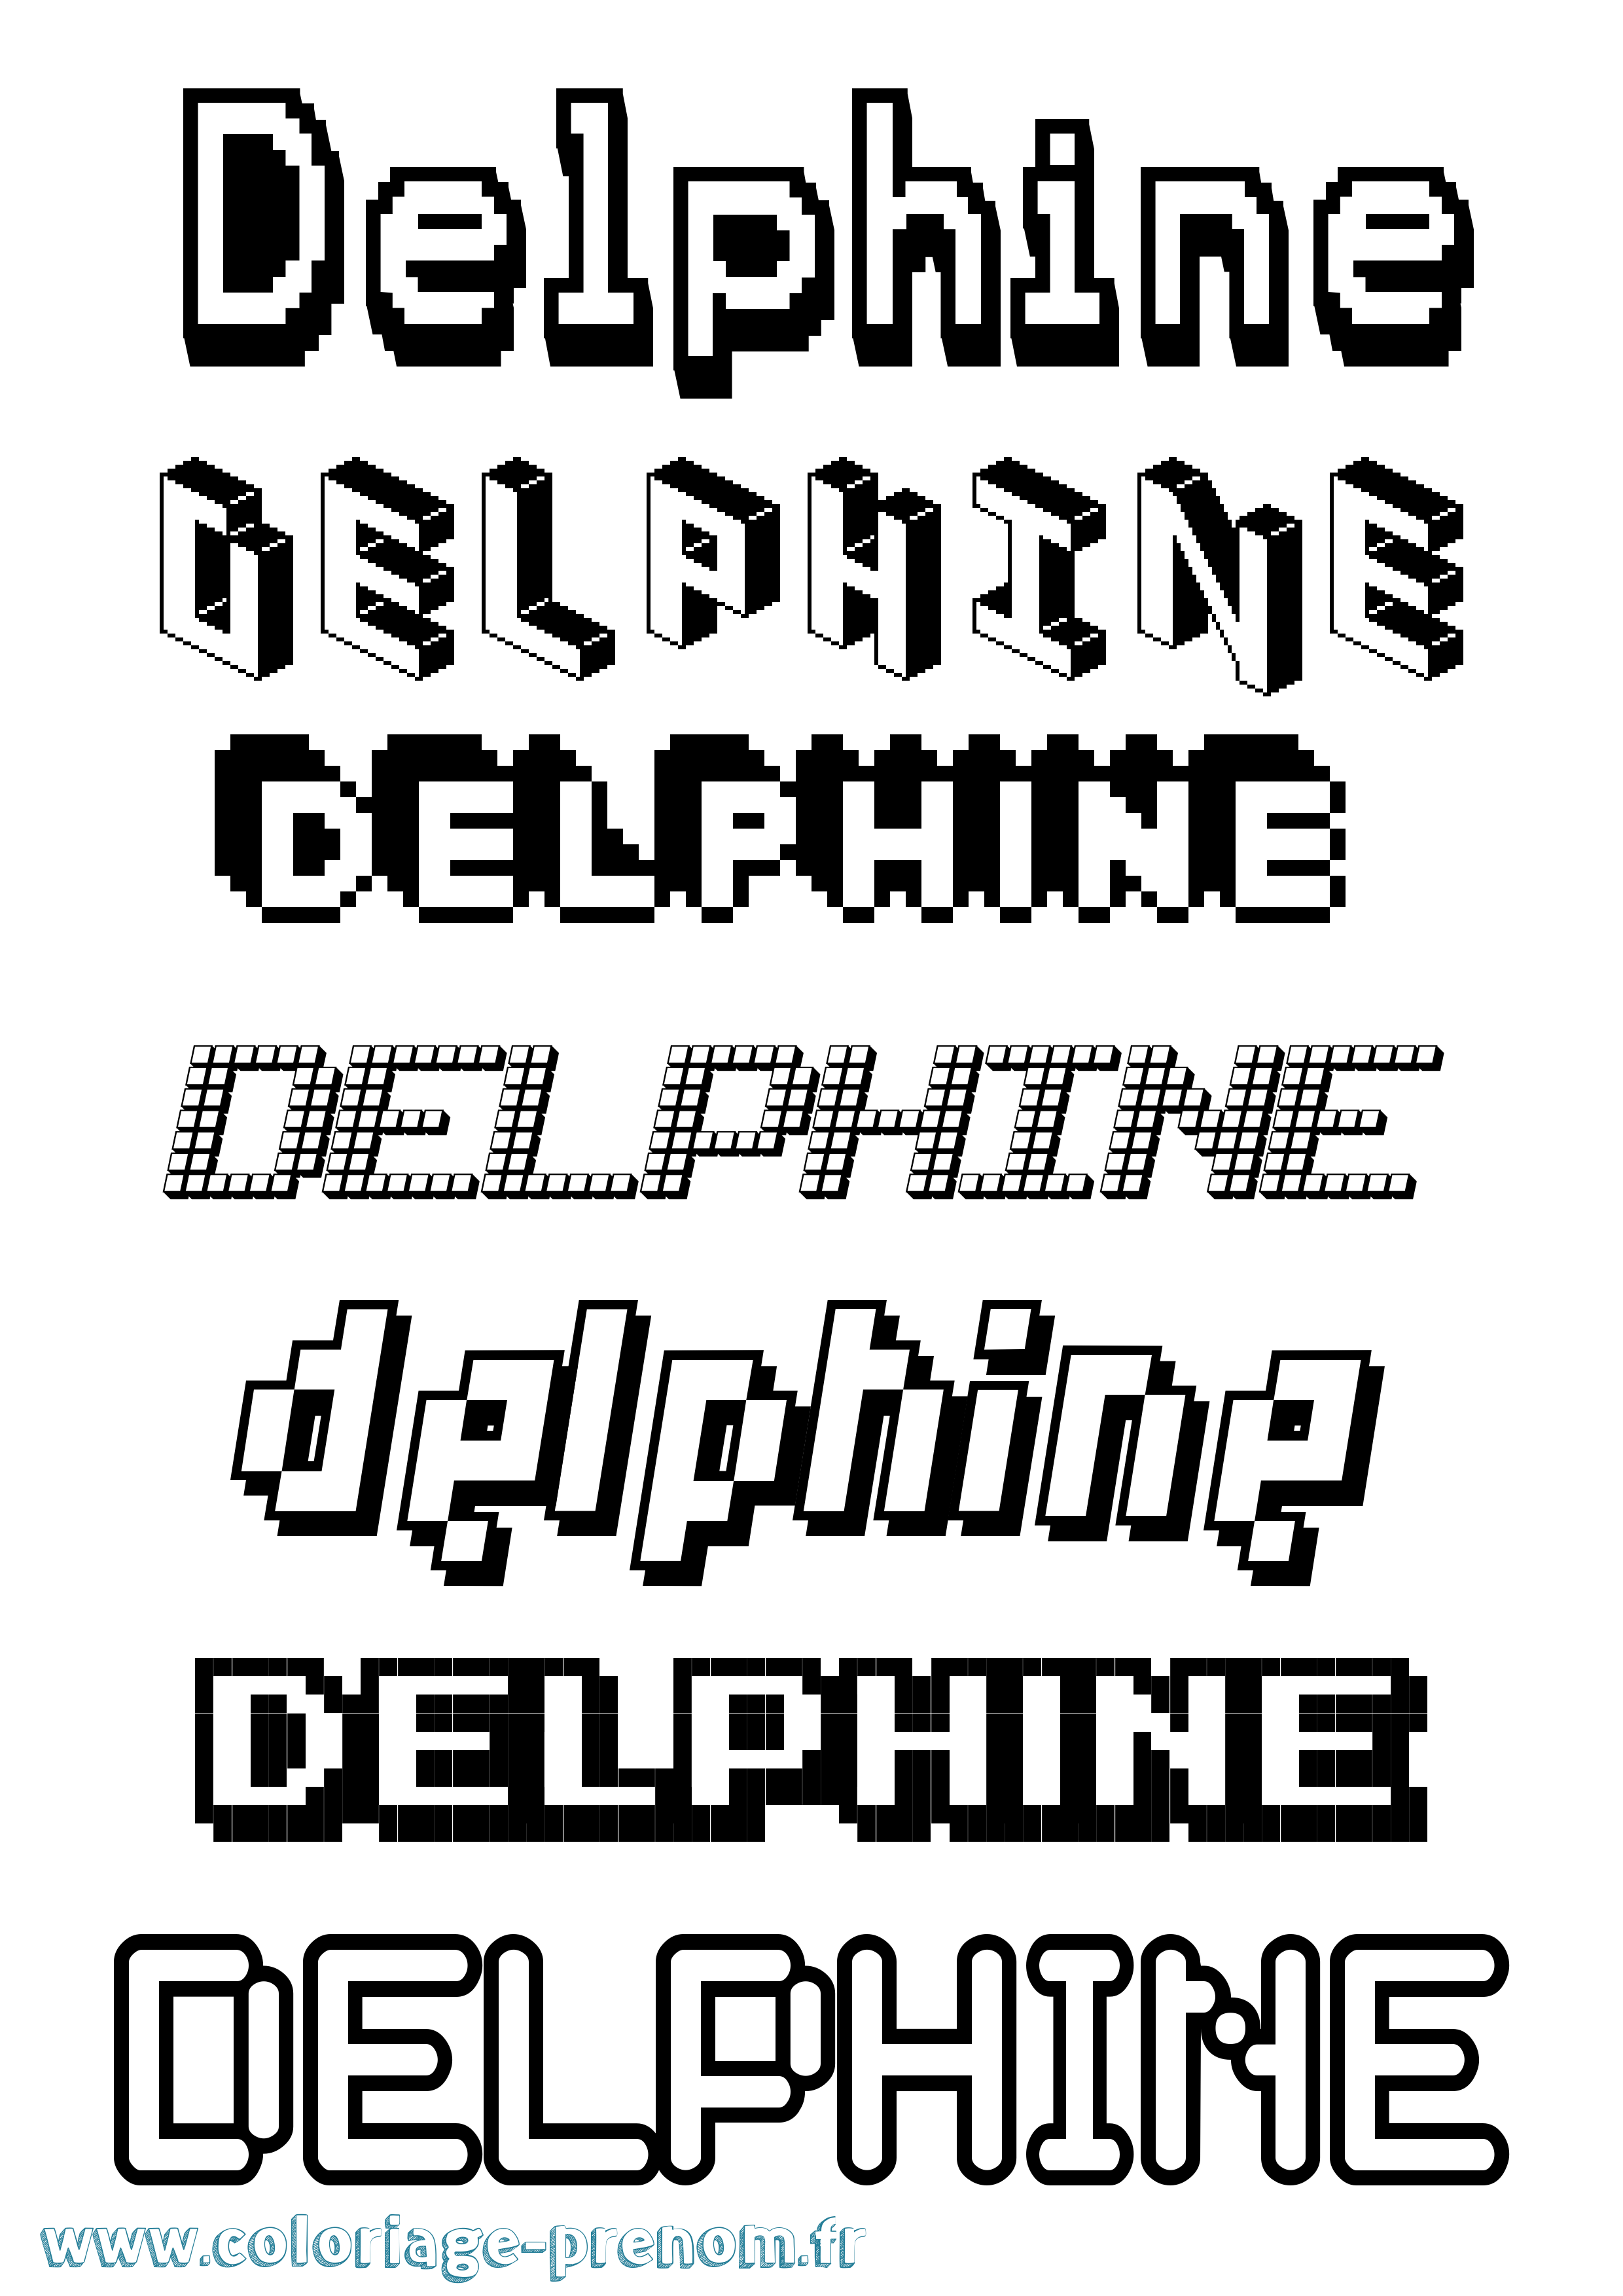 Coloriage prénom Delphine Pixel